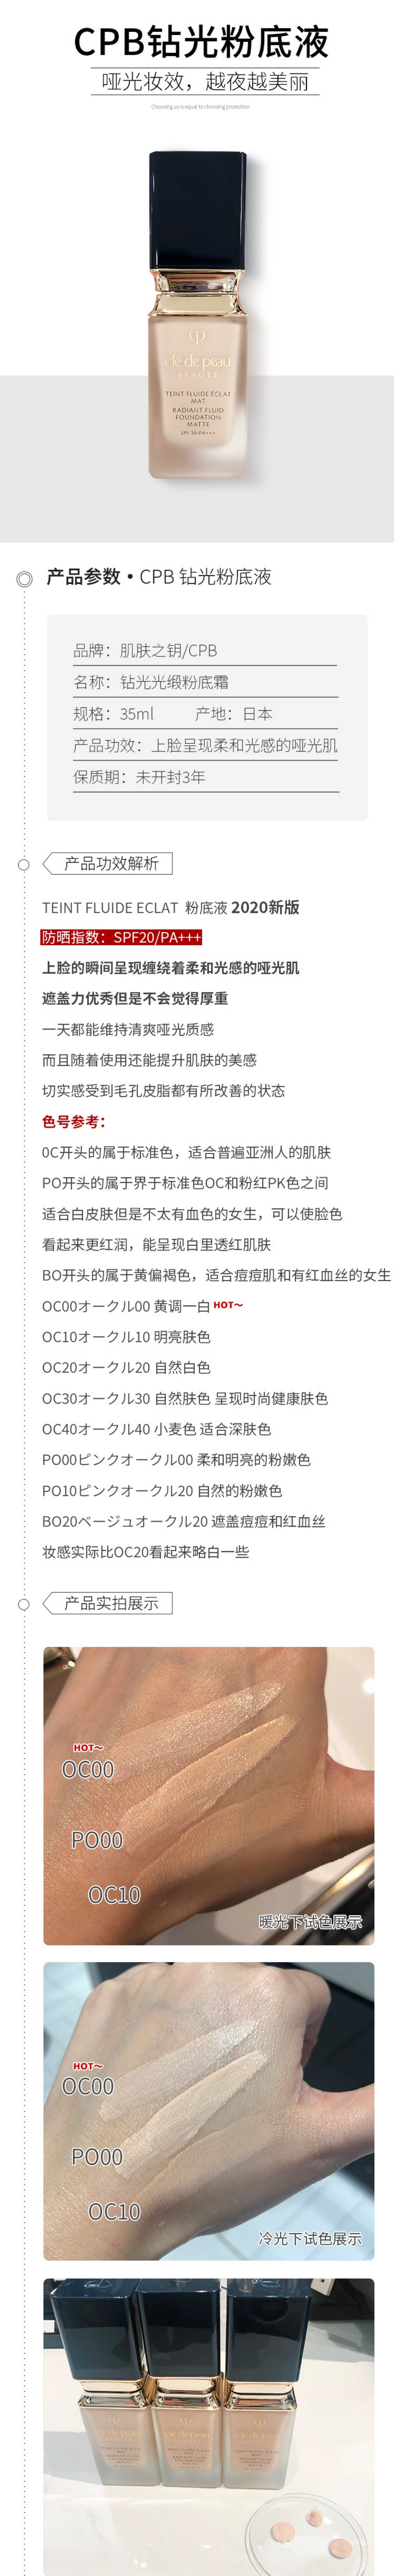 【日本直郵】日本本土版 資生堂CPB 2020新款鑽光粉底液 霧面持久輕薄 OC00 35ml